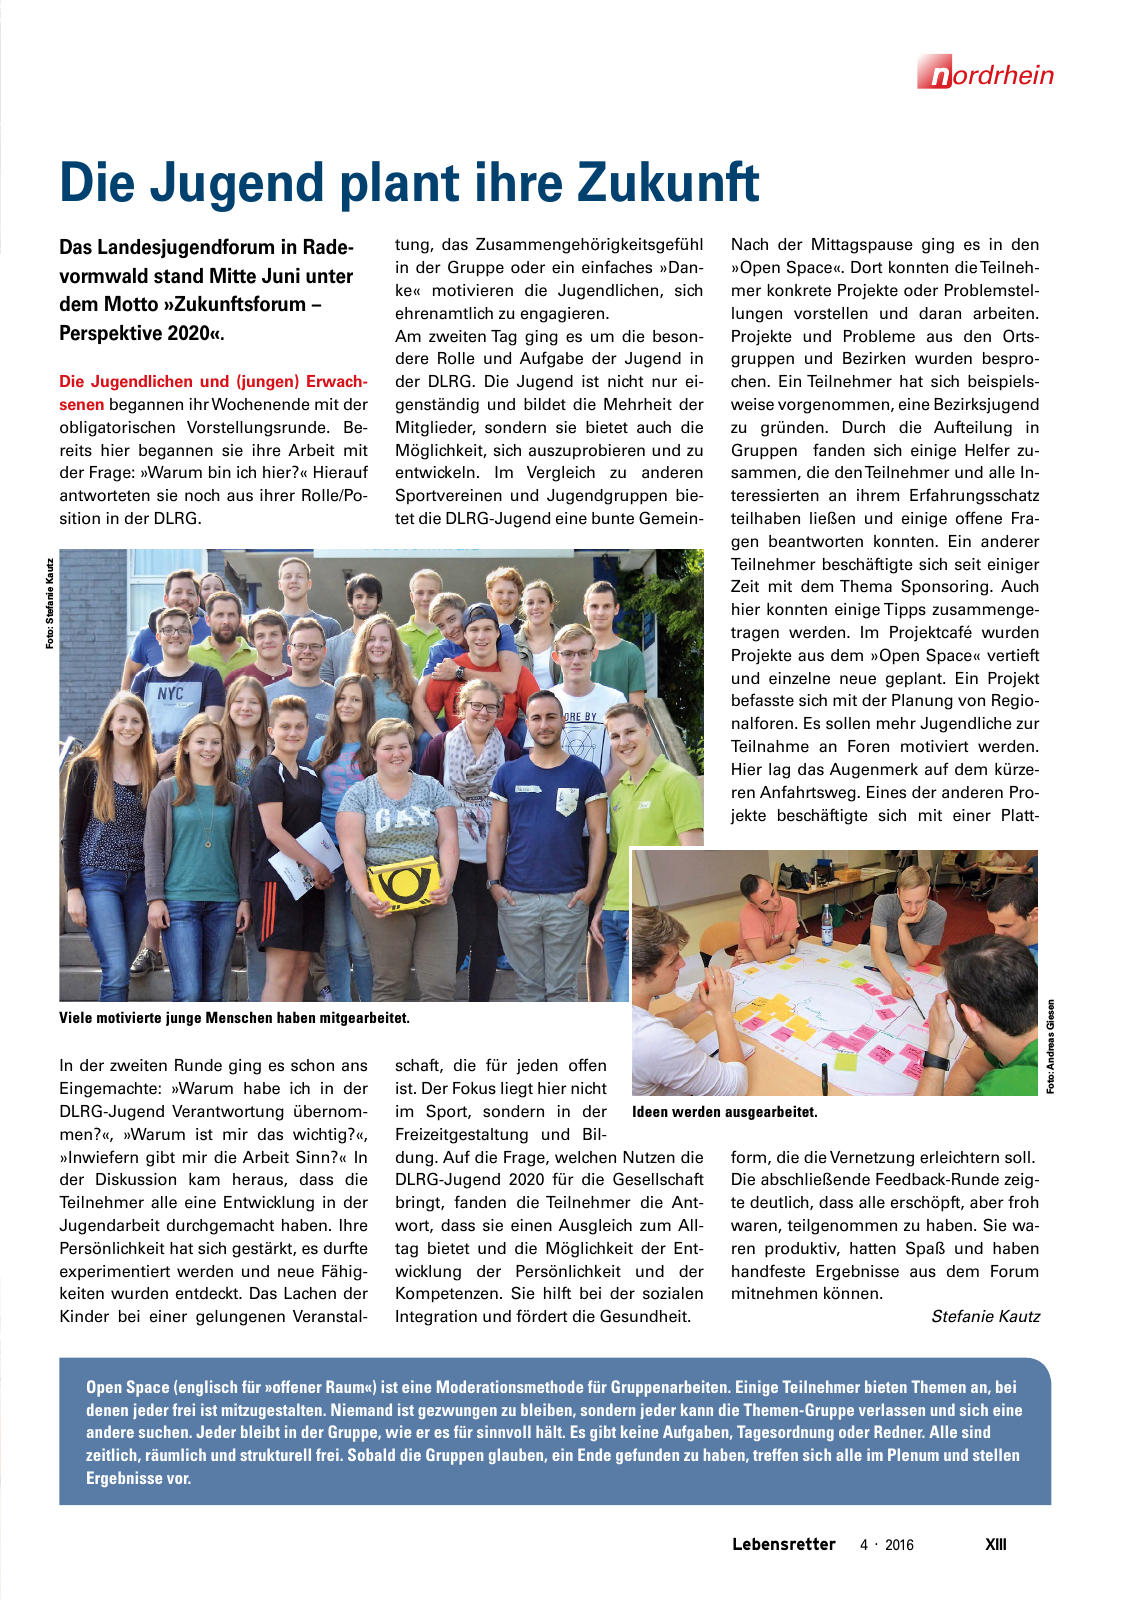 Vorschau Lebensretter 4/2016 - Regionalausgabe Nordrhein Seite 15